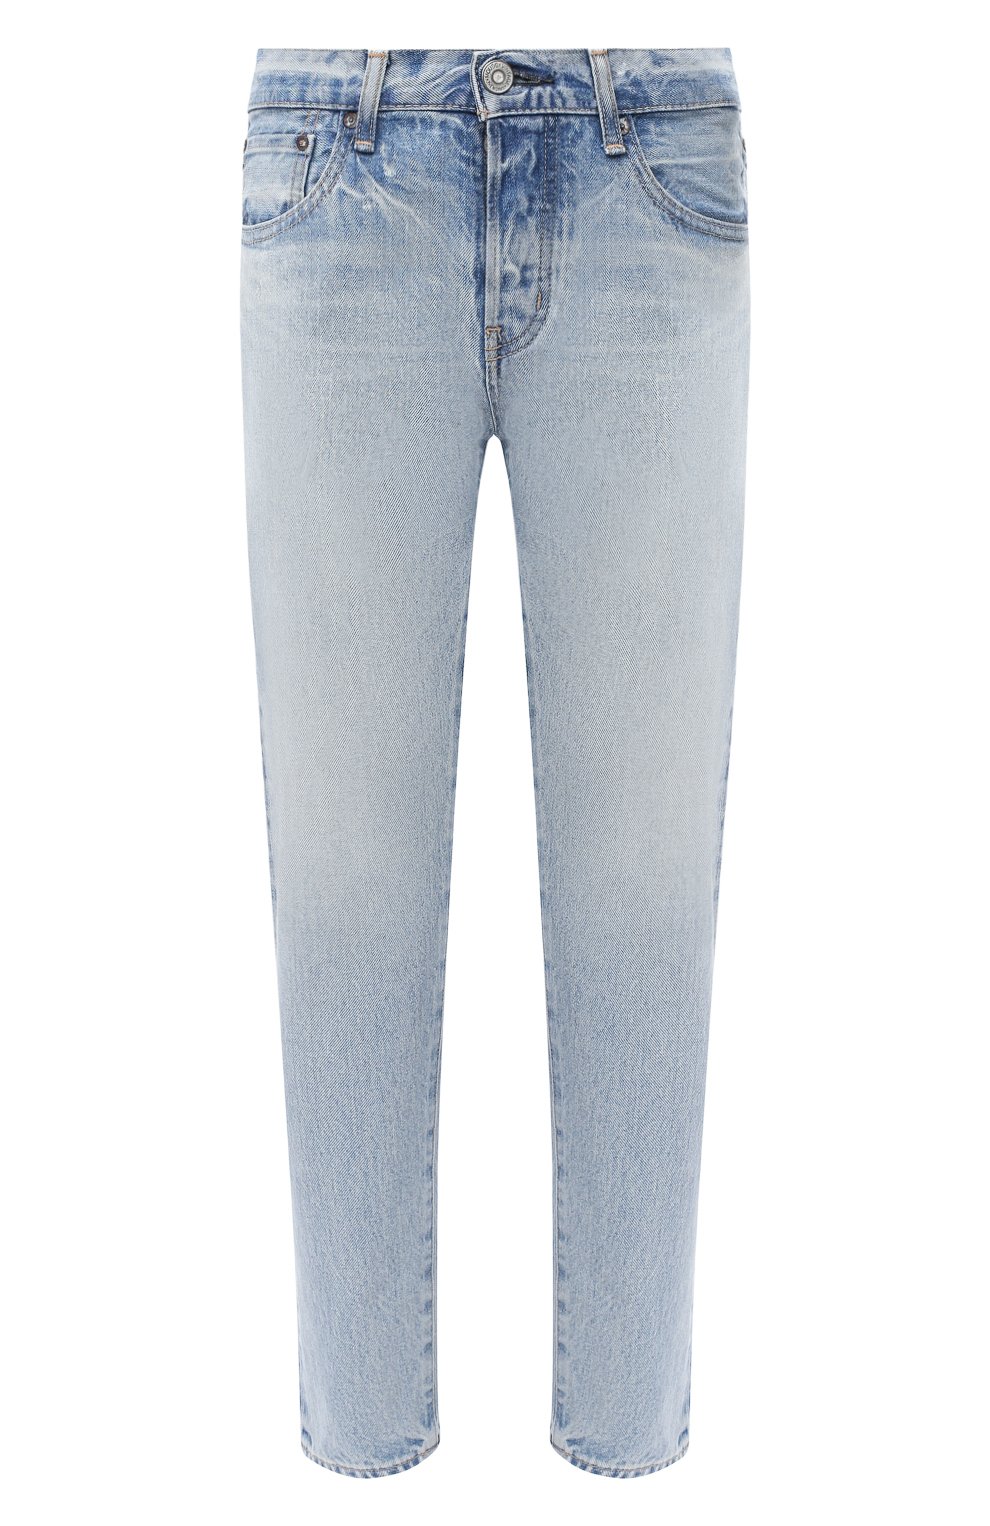 джинсы валберис женские 52 размер